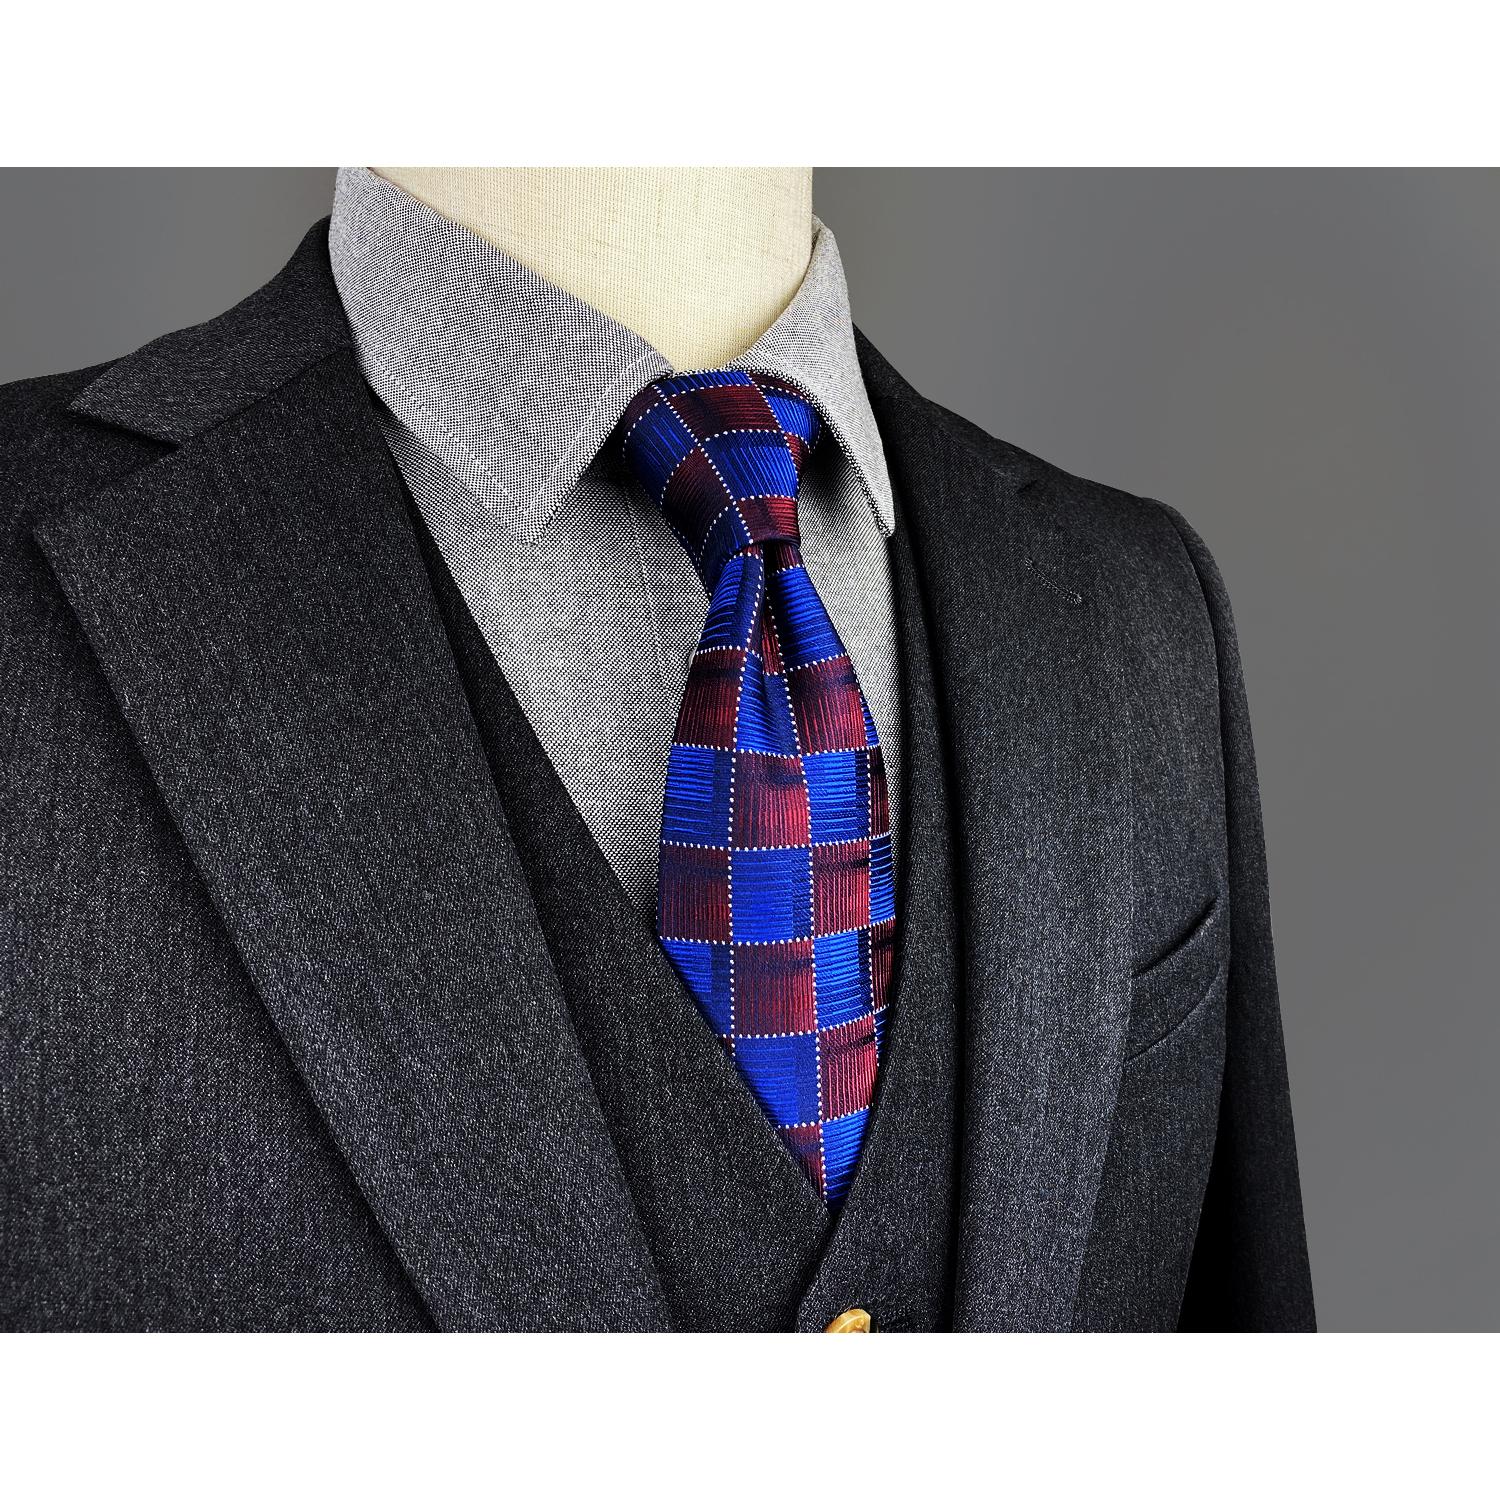 Изображение товара: Цветные красивые галстуки в горошек 160 см 63 дюйма сверхдлинные шелковые галстуки роскошные галстуки для мужчин серые однотонные шашки для гостей свадьбы вечевечерние в подарок